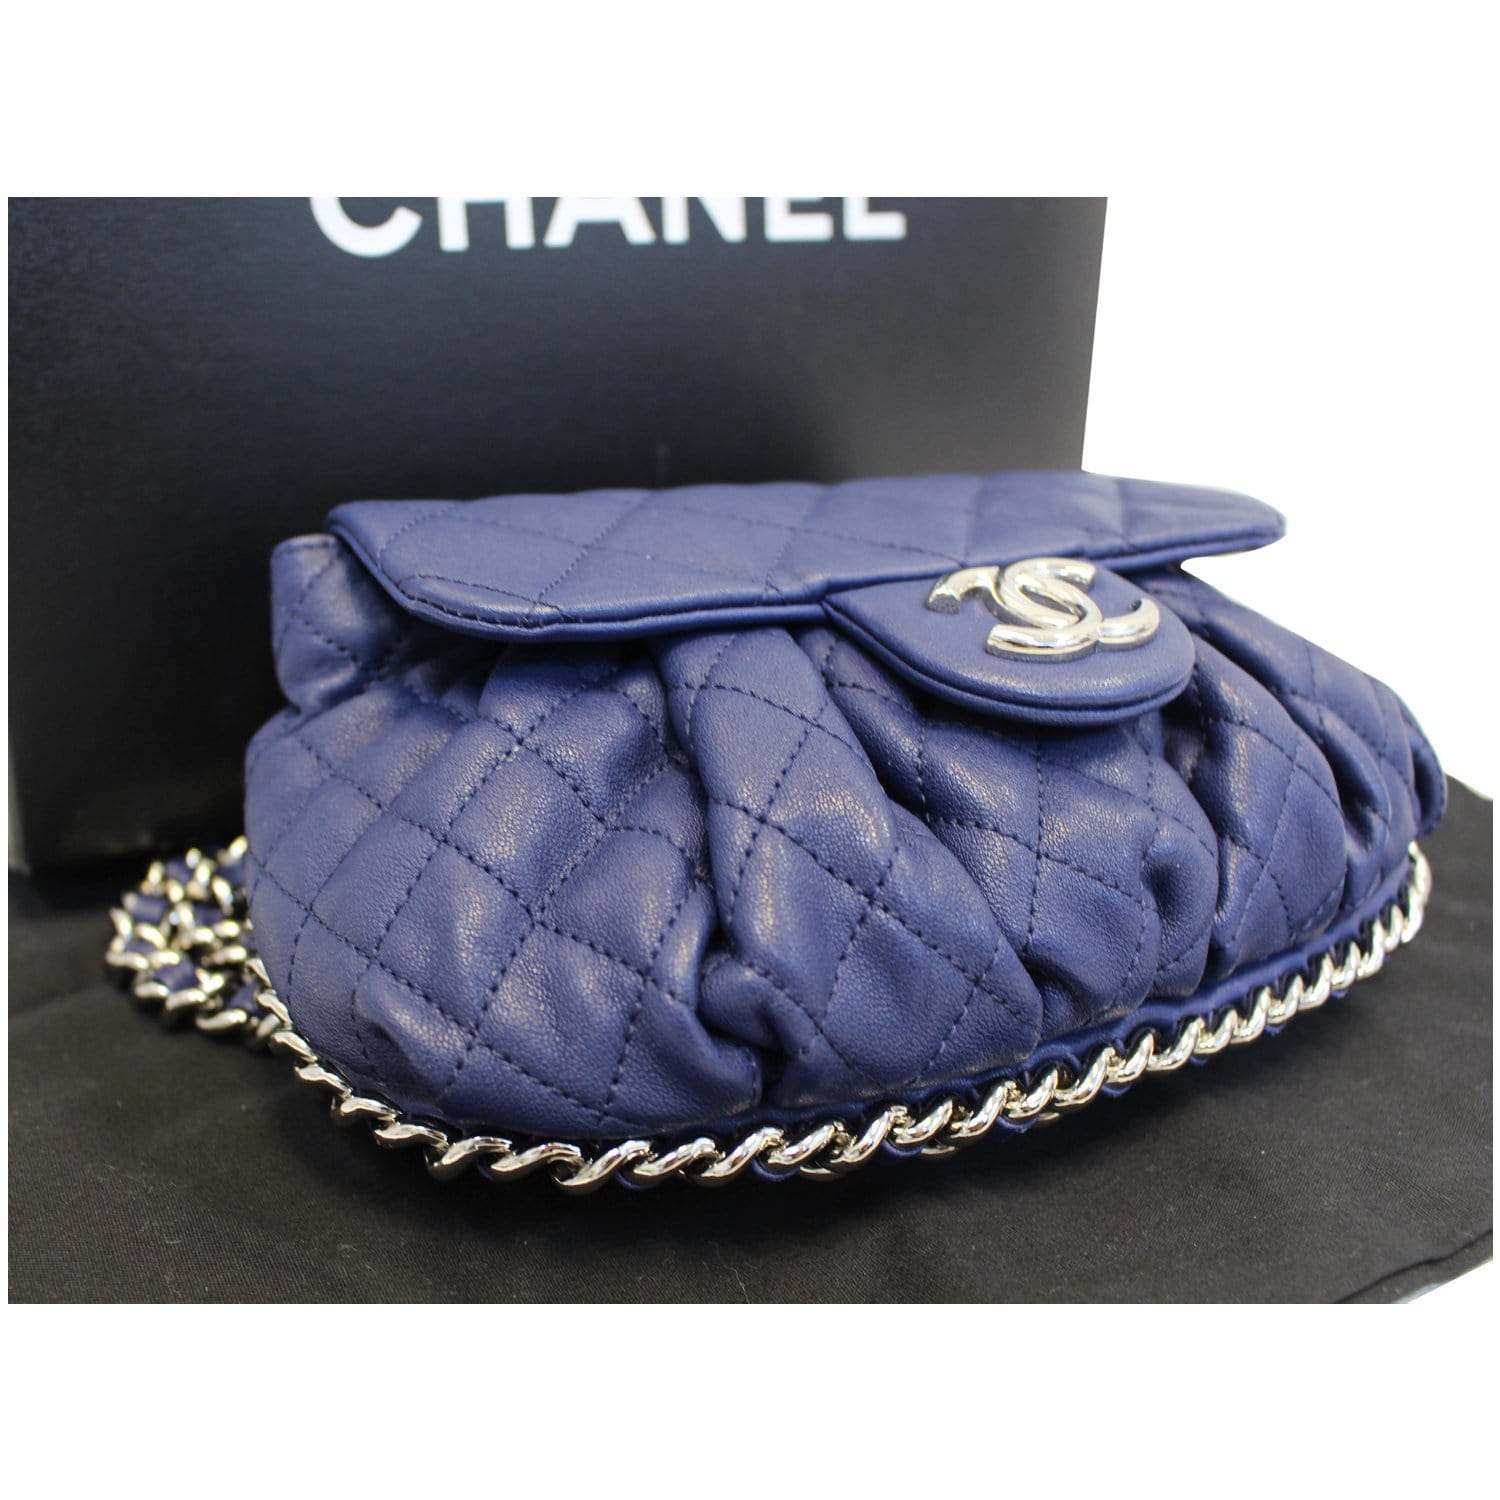 Chanel medium Chain around bag silver hardware